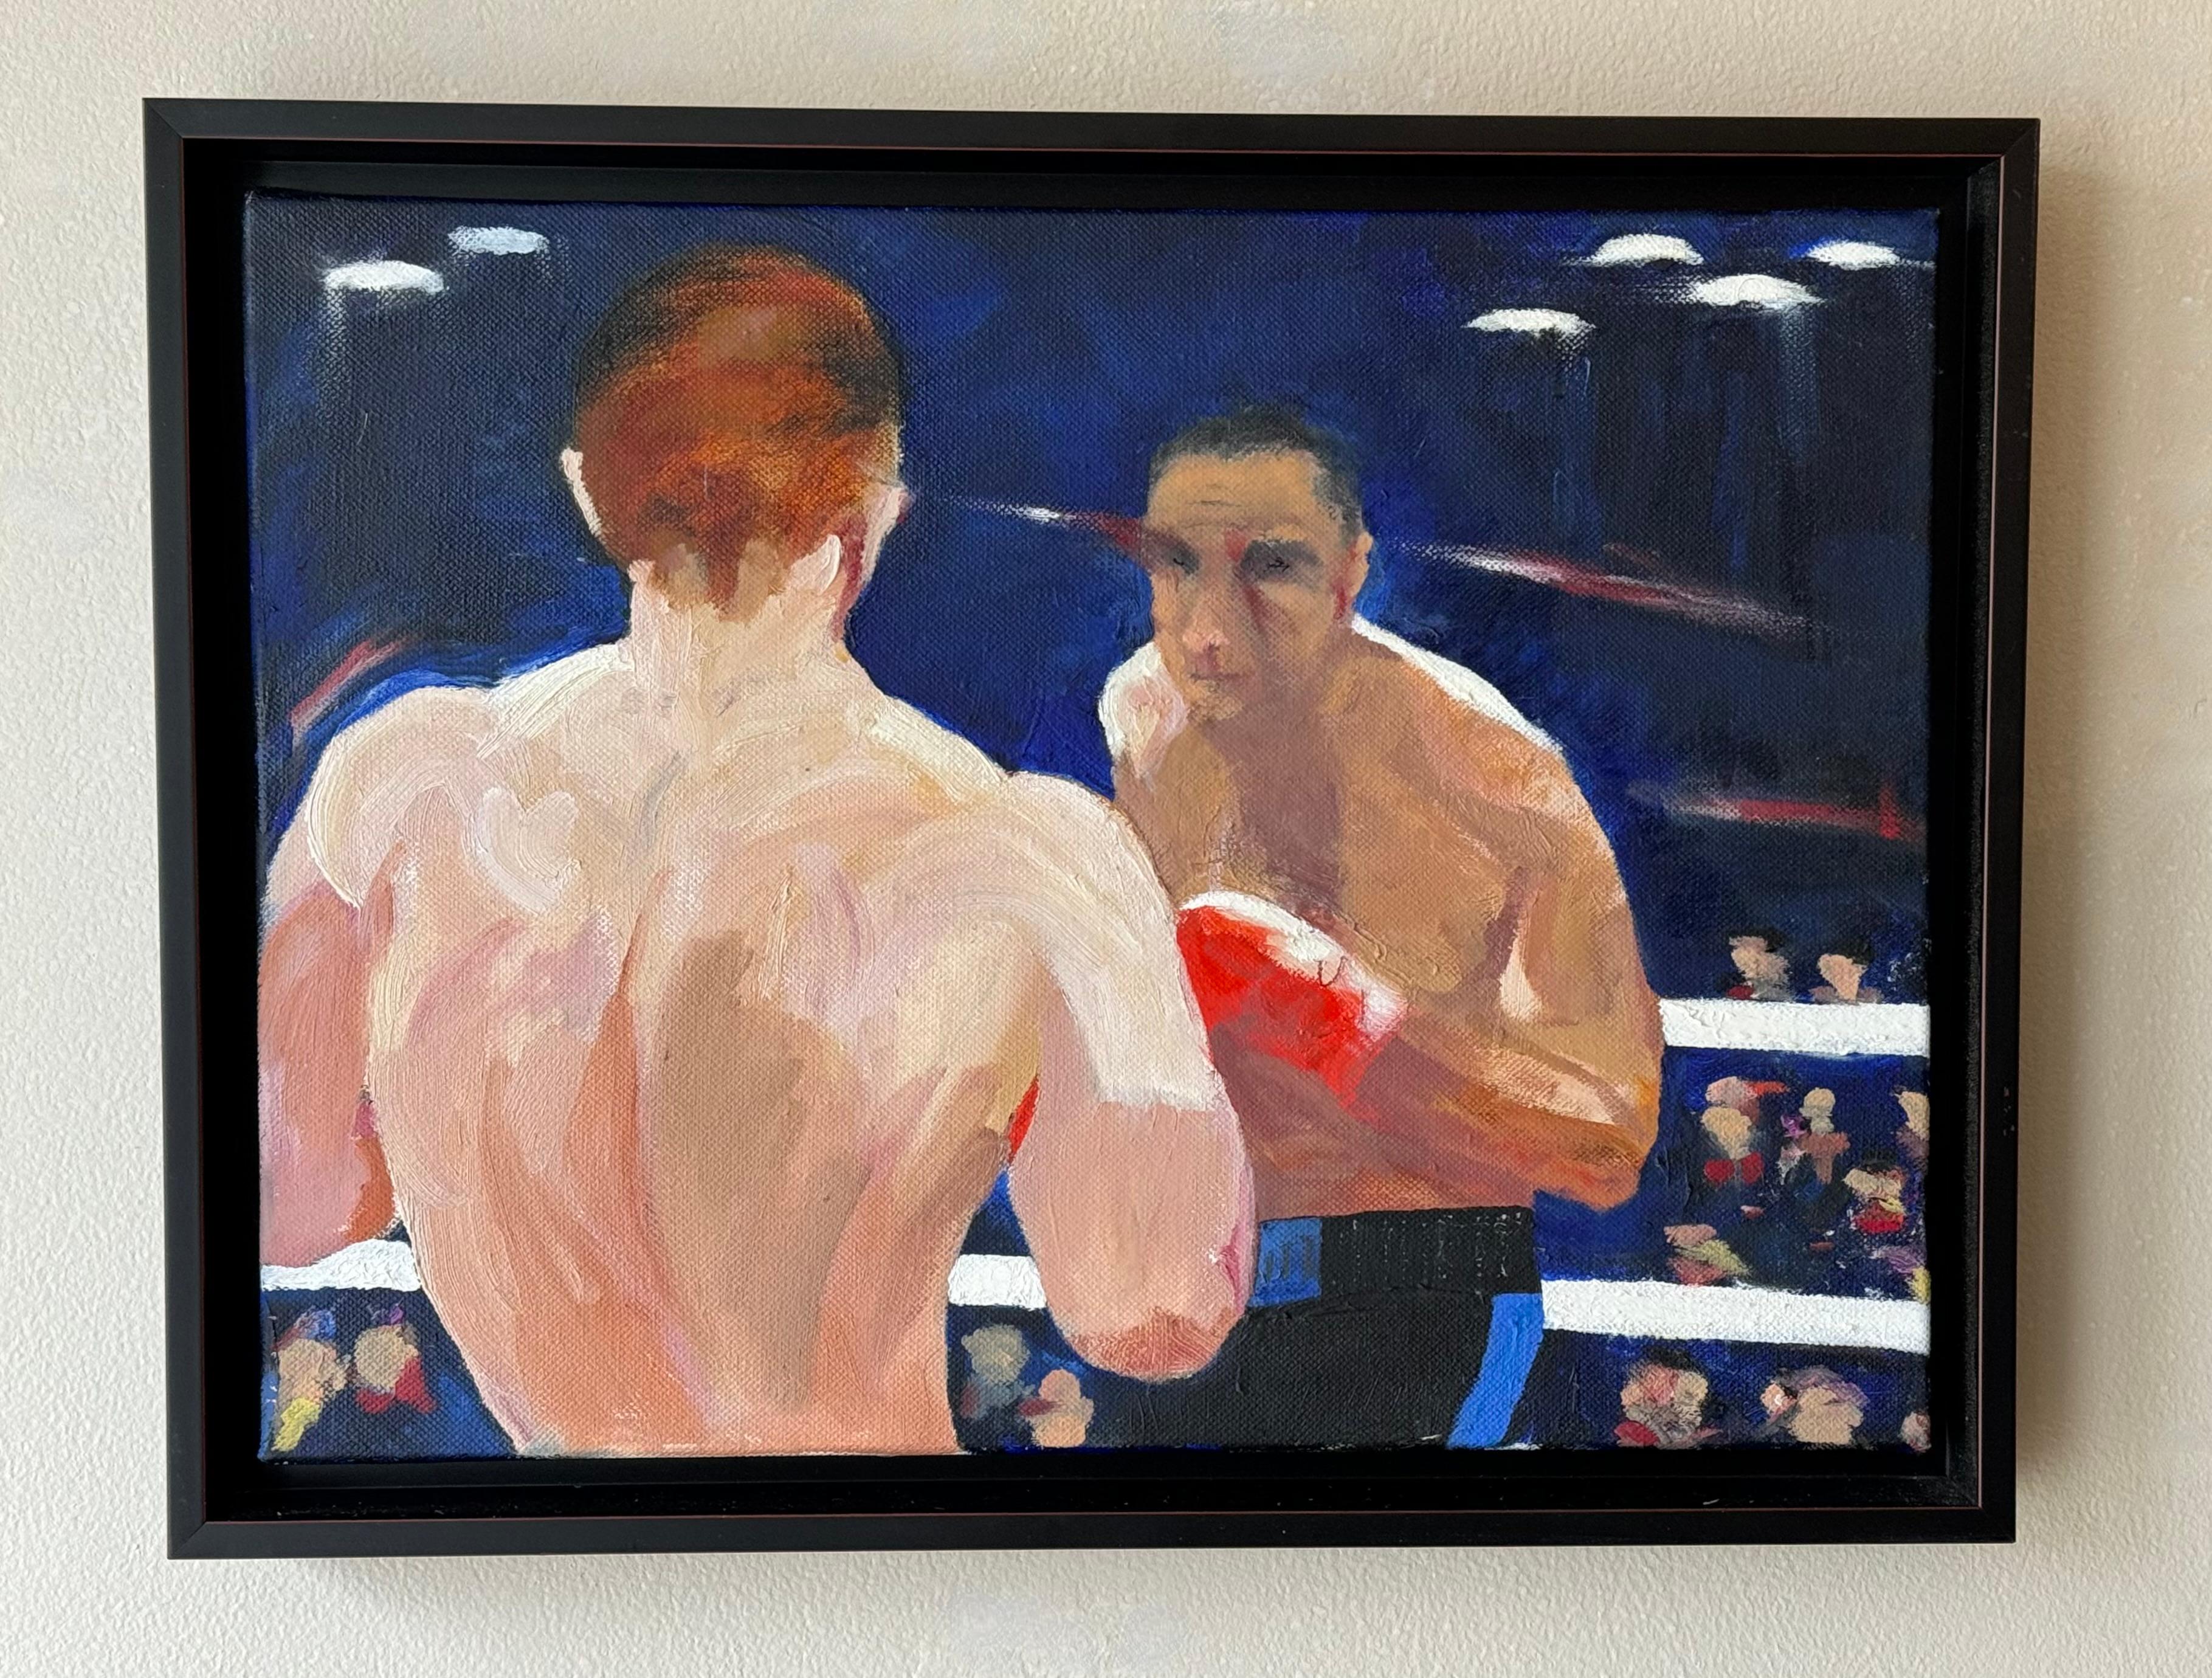 Peinture acrylique sur toile représentant deux boxeurs sur le ring avec les spectateurs en arrière-plan. Réalisé dans un style abstrait légèrement figuratif avec l'aspect et l'ambiance des années 1950. La toile elle-même flotte dans le cadre qui est